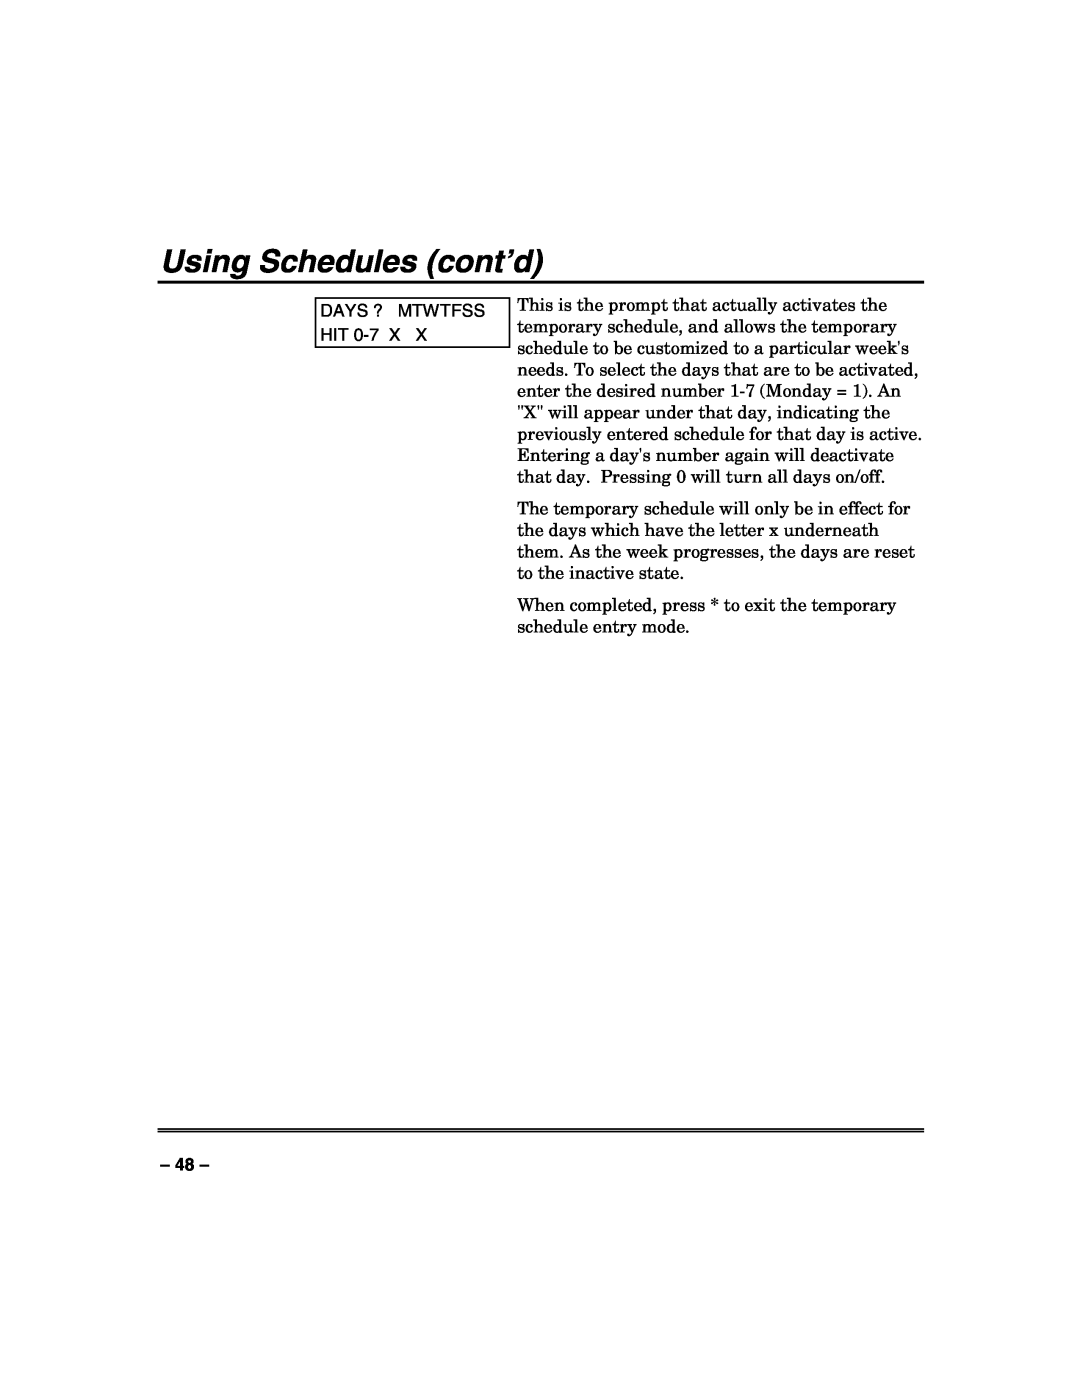 Honeywell VISTA-250FBP, VISTA-128FBP manual Using Schedules cont’d, Days ? Mtwtfss Hit 